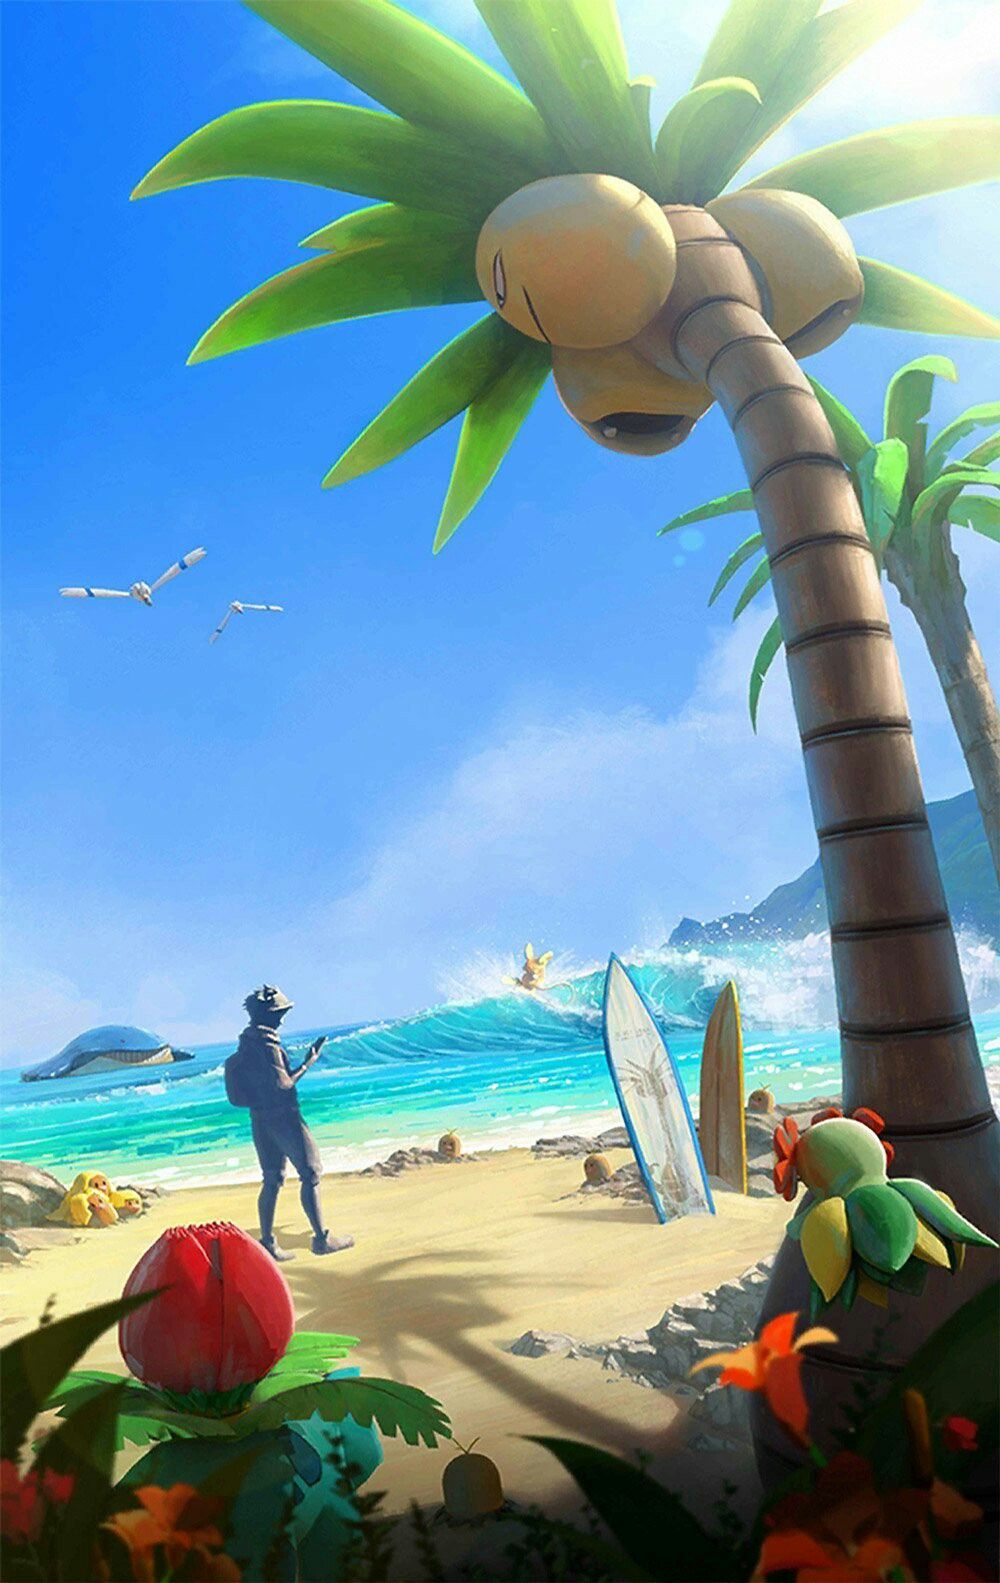 Alola Region🌺  Pokemon alola, Pokemon sun, Cute pokemon wallpaper